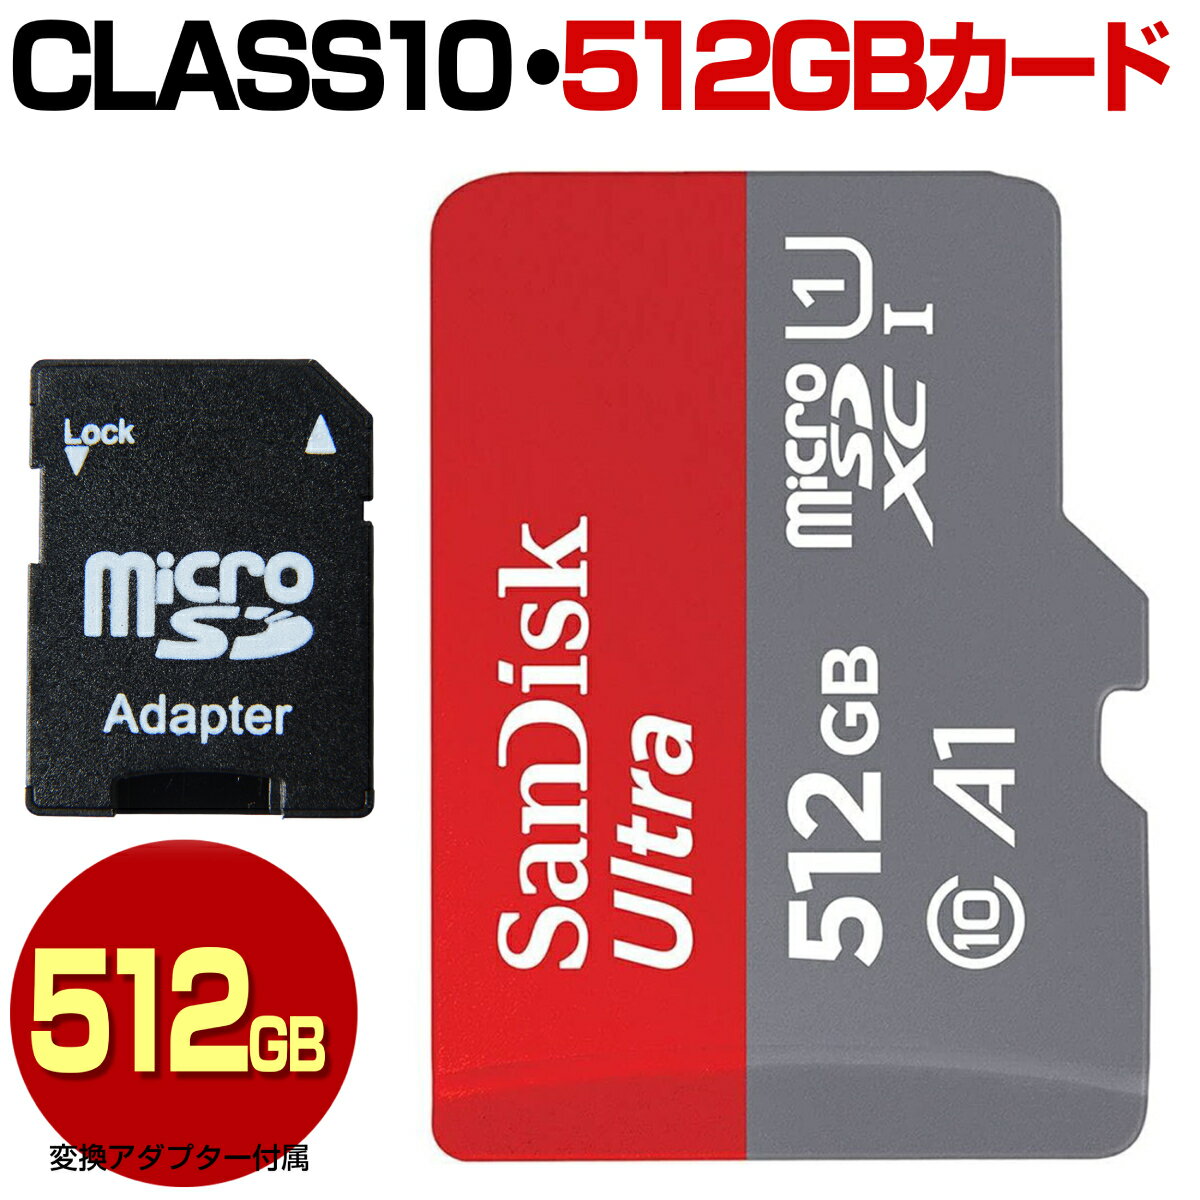 SanDisk サンディスク マイクロ SDカード 512GB micro SDXC マイクロSDXC 高速転送 Class10 クラス10 UHS-I A1 100MB/s U1 microSDカード microSDXCカード マイクロSDXCカード カードアダプター付属 スマートフォン スマホ ドライブレコーダー デジカメ 防犯カメラ